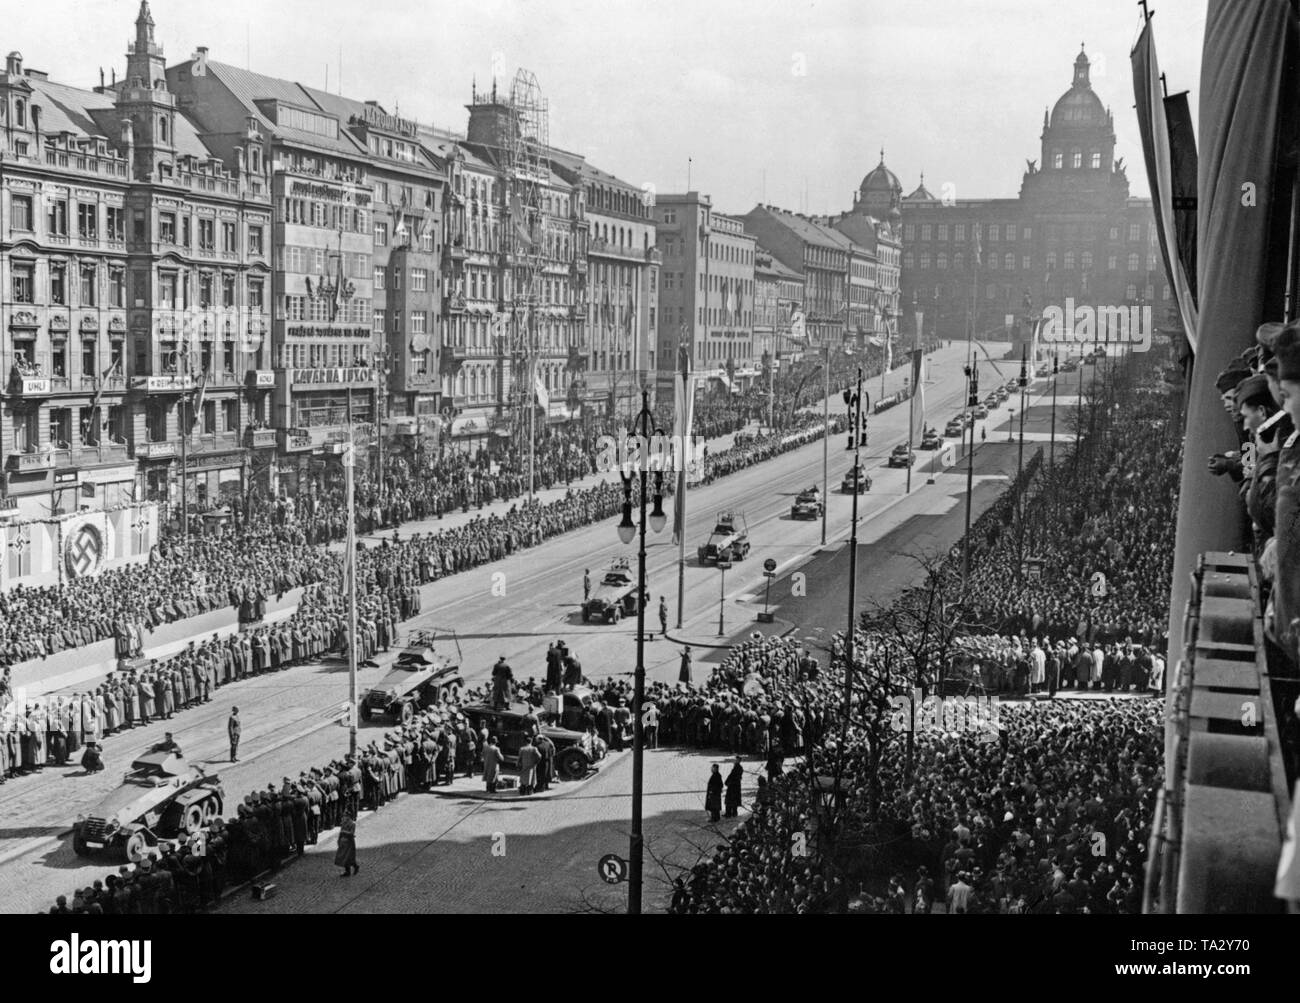 Au cours de l'occupation de la Tchécoslovaquie, un défilé militaire a lieu à la place Venceslas. Une rue est décorée avec des croix gammées. À la fin de la rue, le Musée National. La première République slovaque a été fondée sur la commande d'Hitler en mars 1939, et de Bohême et Moravie étaient occupés par la Wehrmacht. Banque D'Images